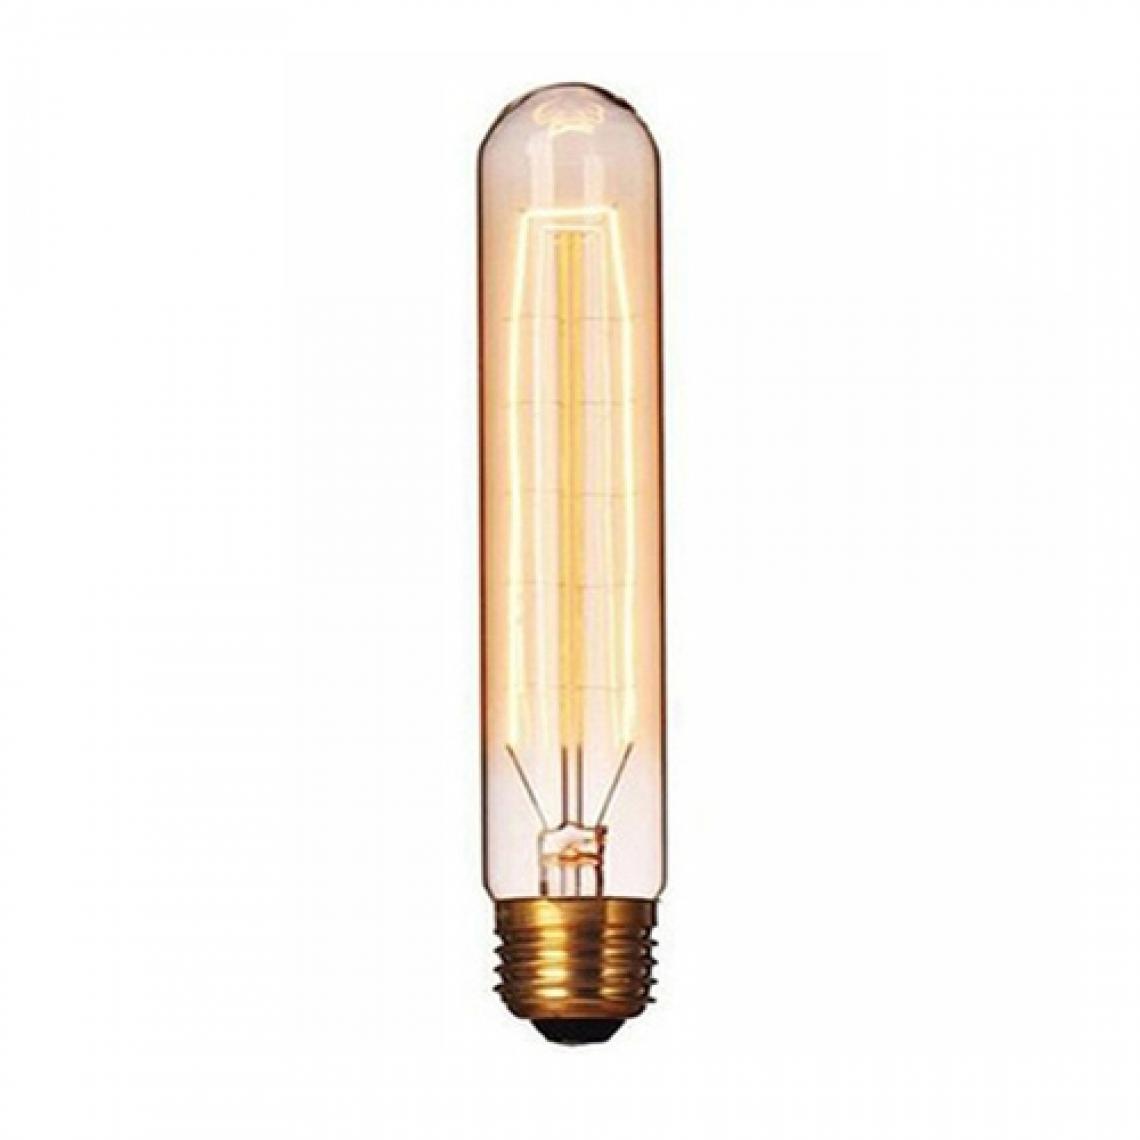 Wewoo - E27 40W rétro Edison ampoule filament Vintage à incandescenceAC 220V T185 - Ampoules LED